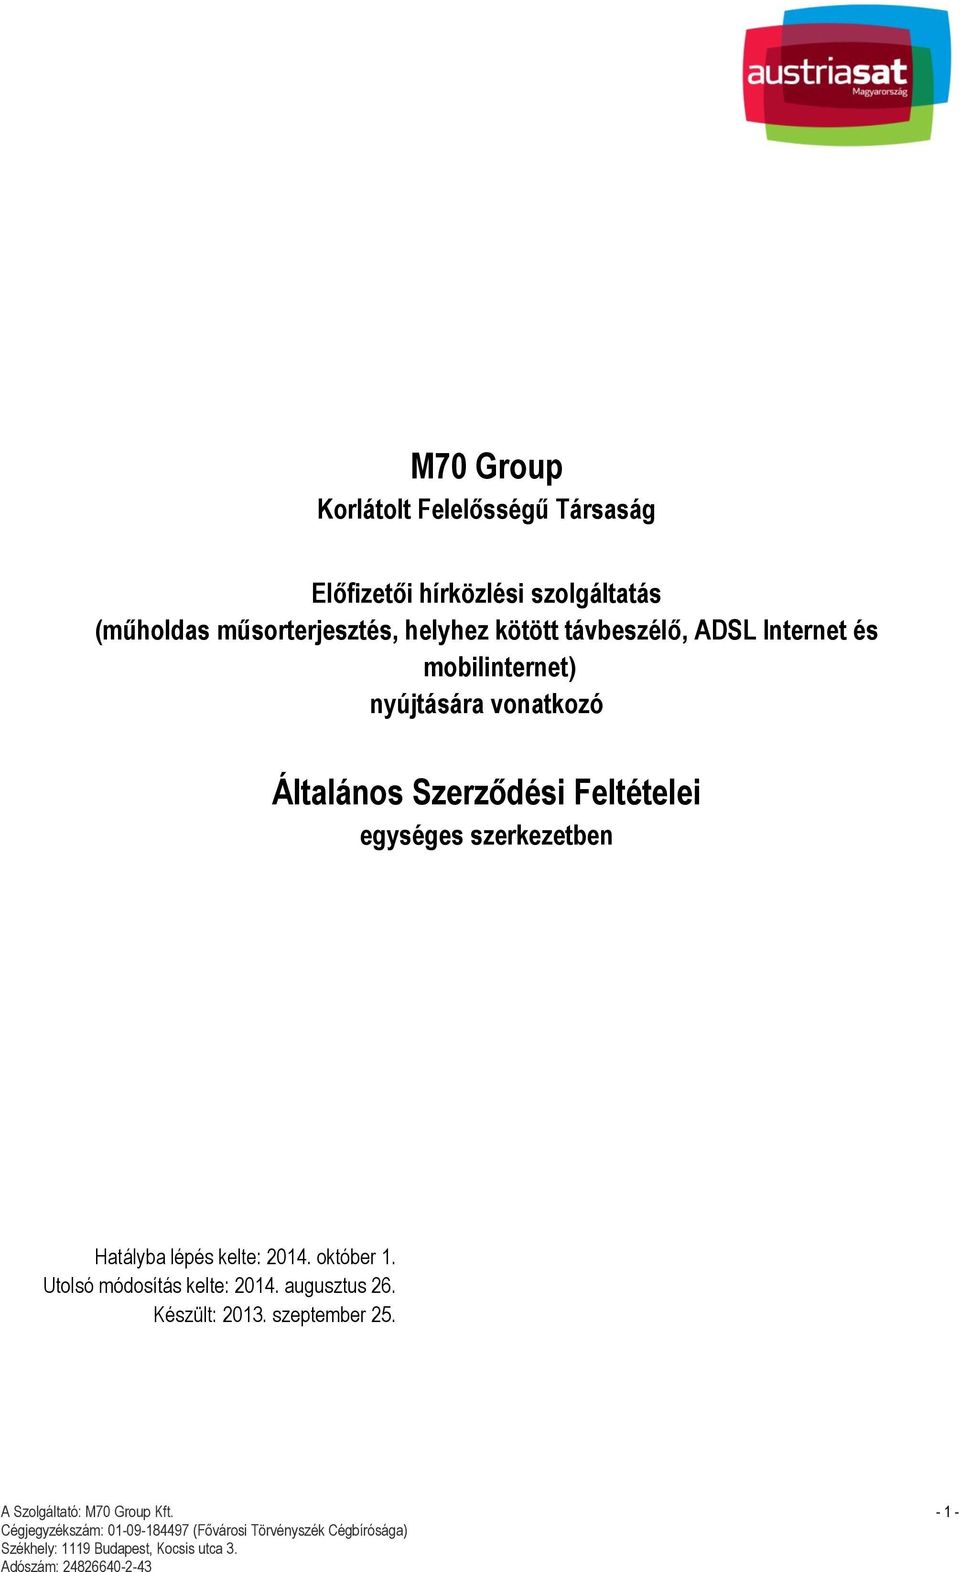 M70 Group. Általános Szerződési Feltételei - PDF Ingyenes letöltés